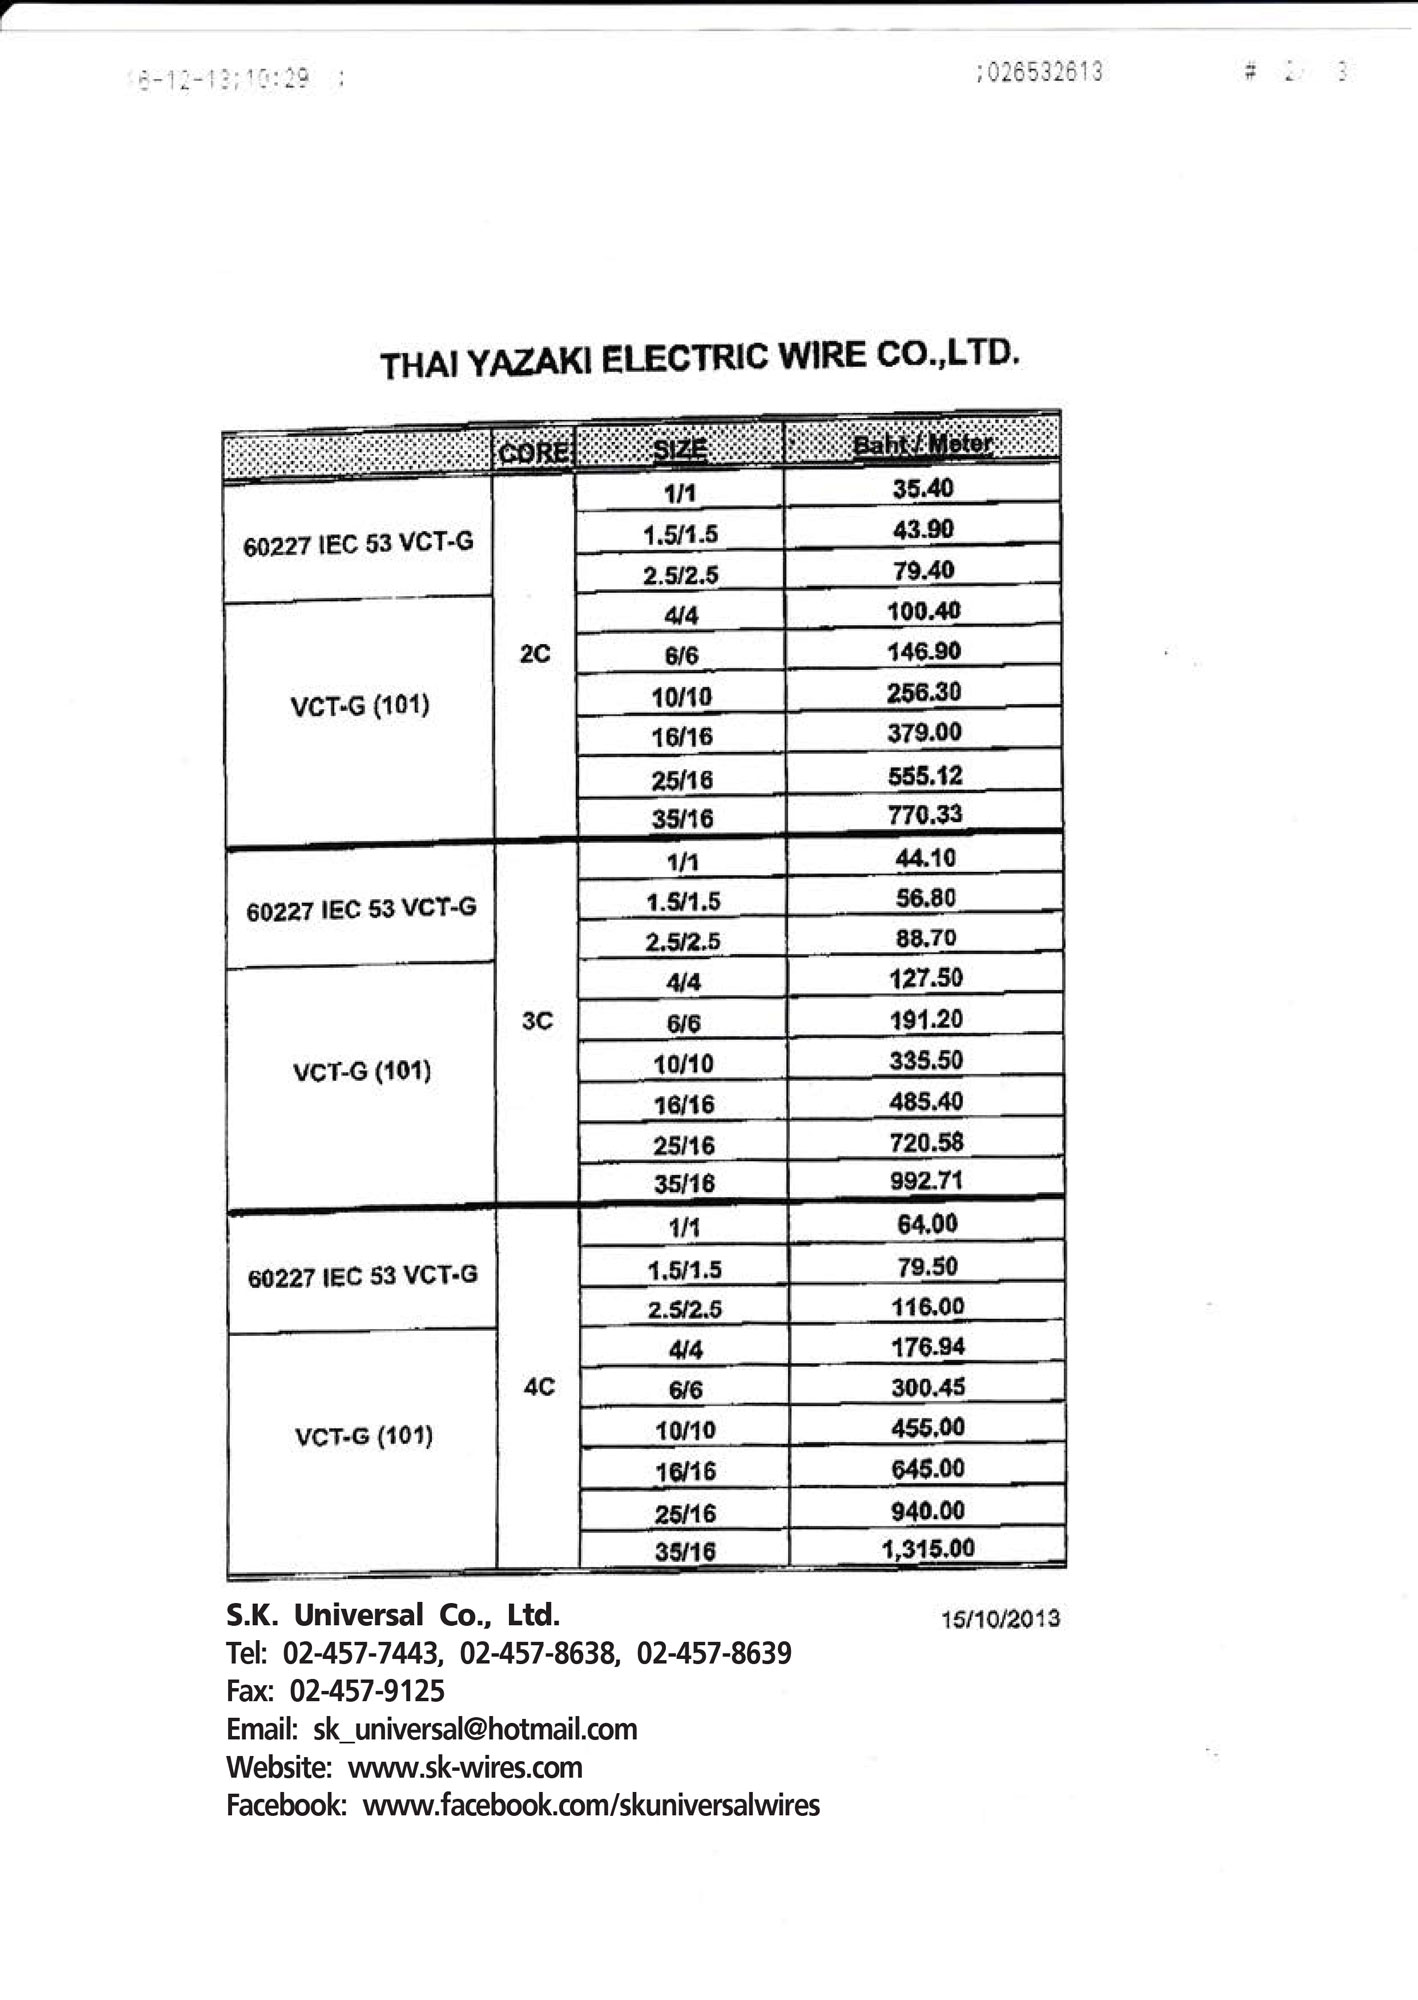 สายไฟ VCT-G Price List